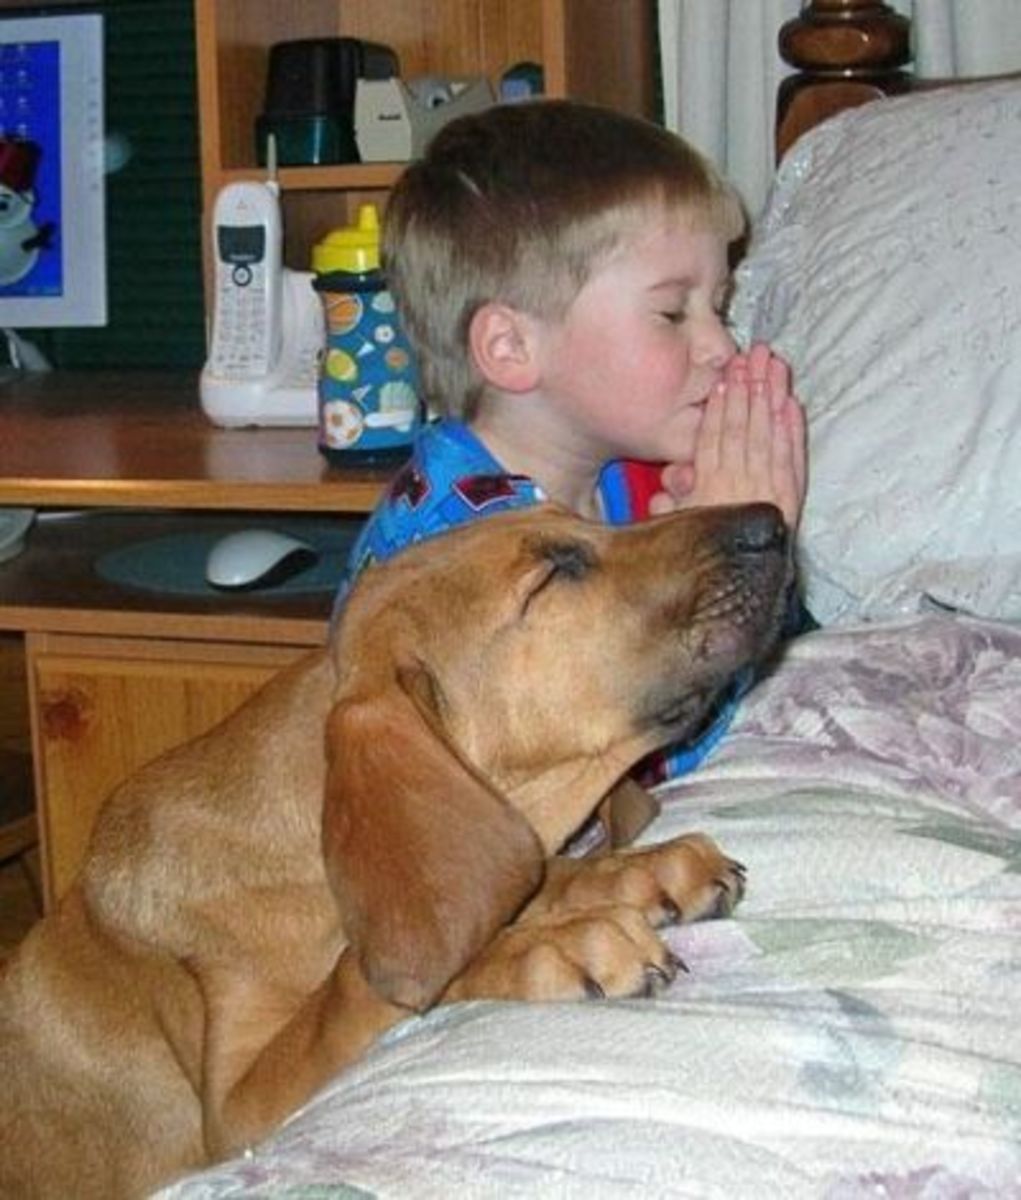 September 7th - Praying Dog